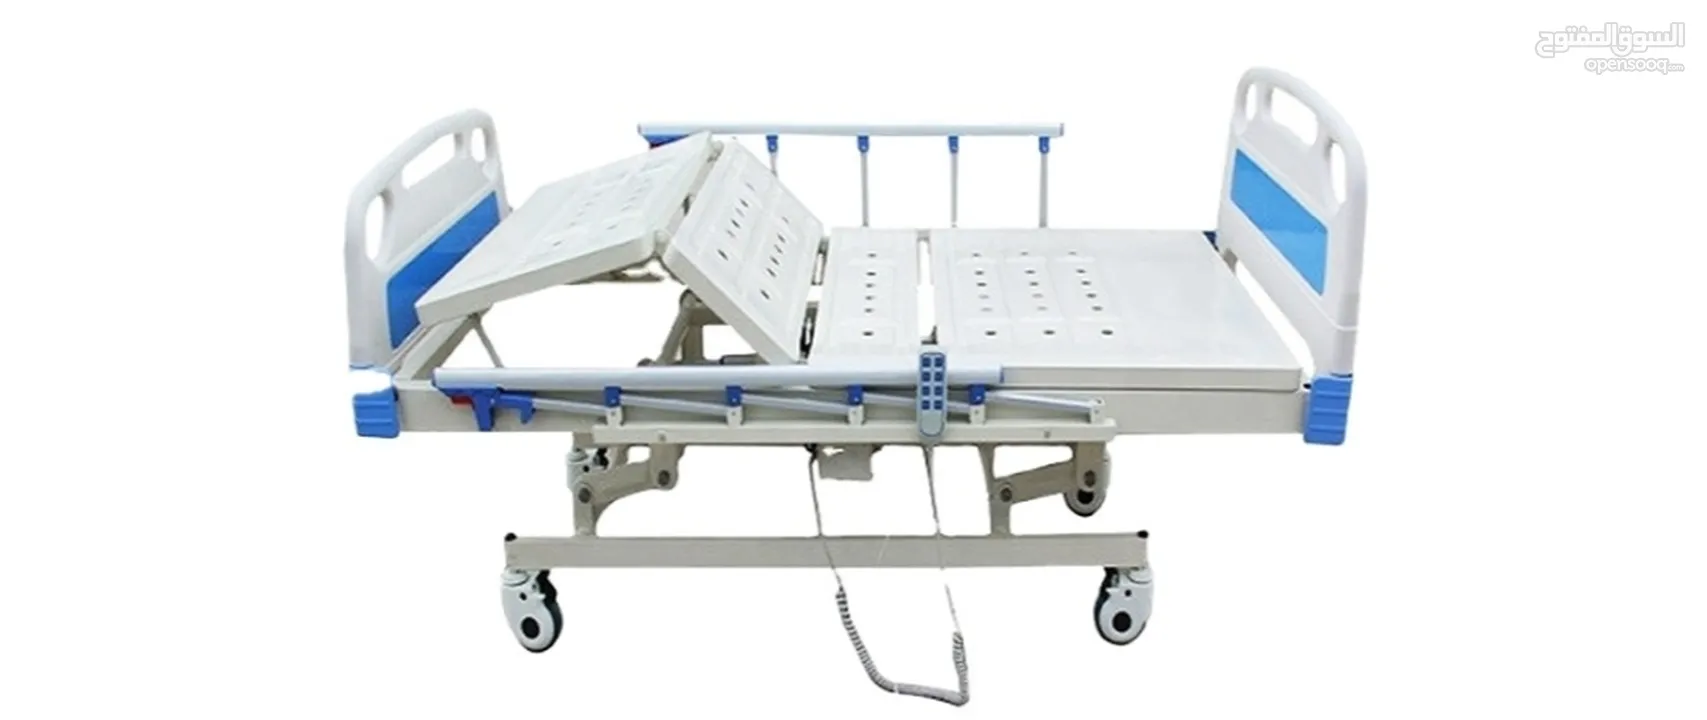 تخت طبي تأجير - بيع 'سرير طبي' كهربائي 4حركات